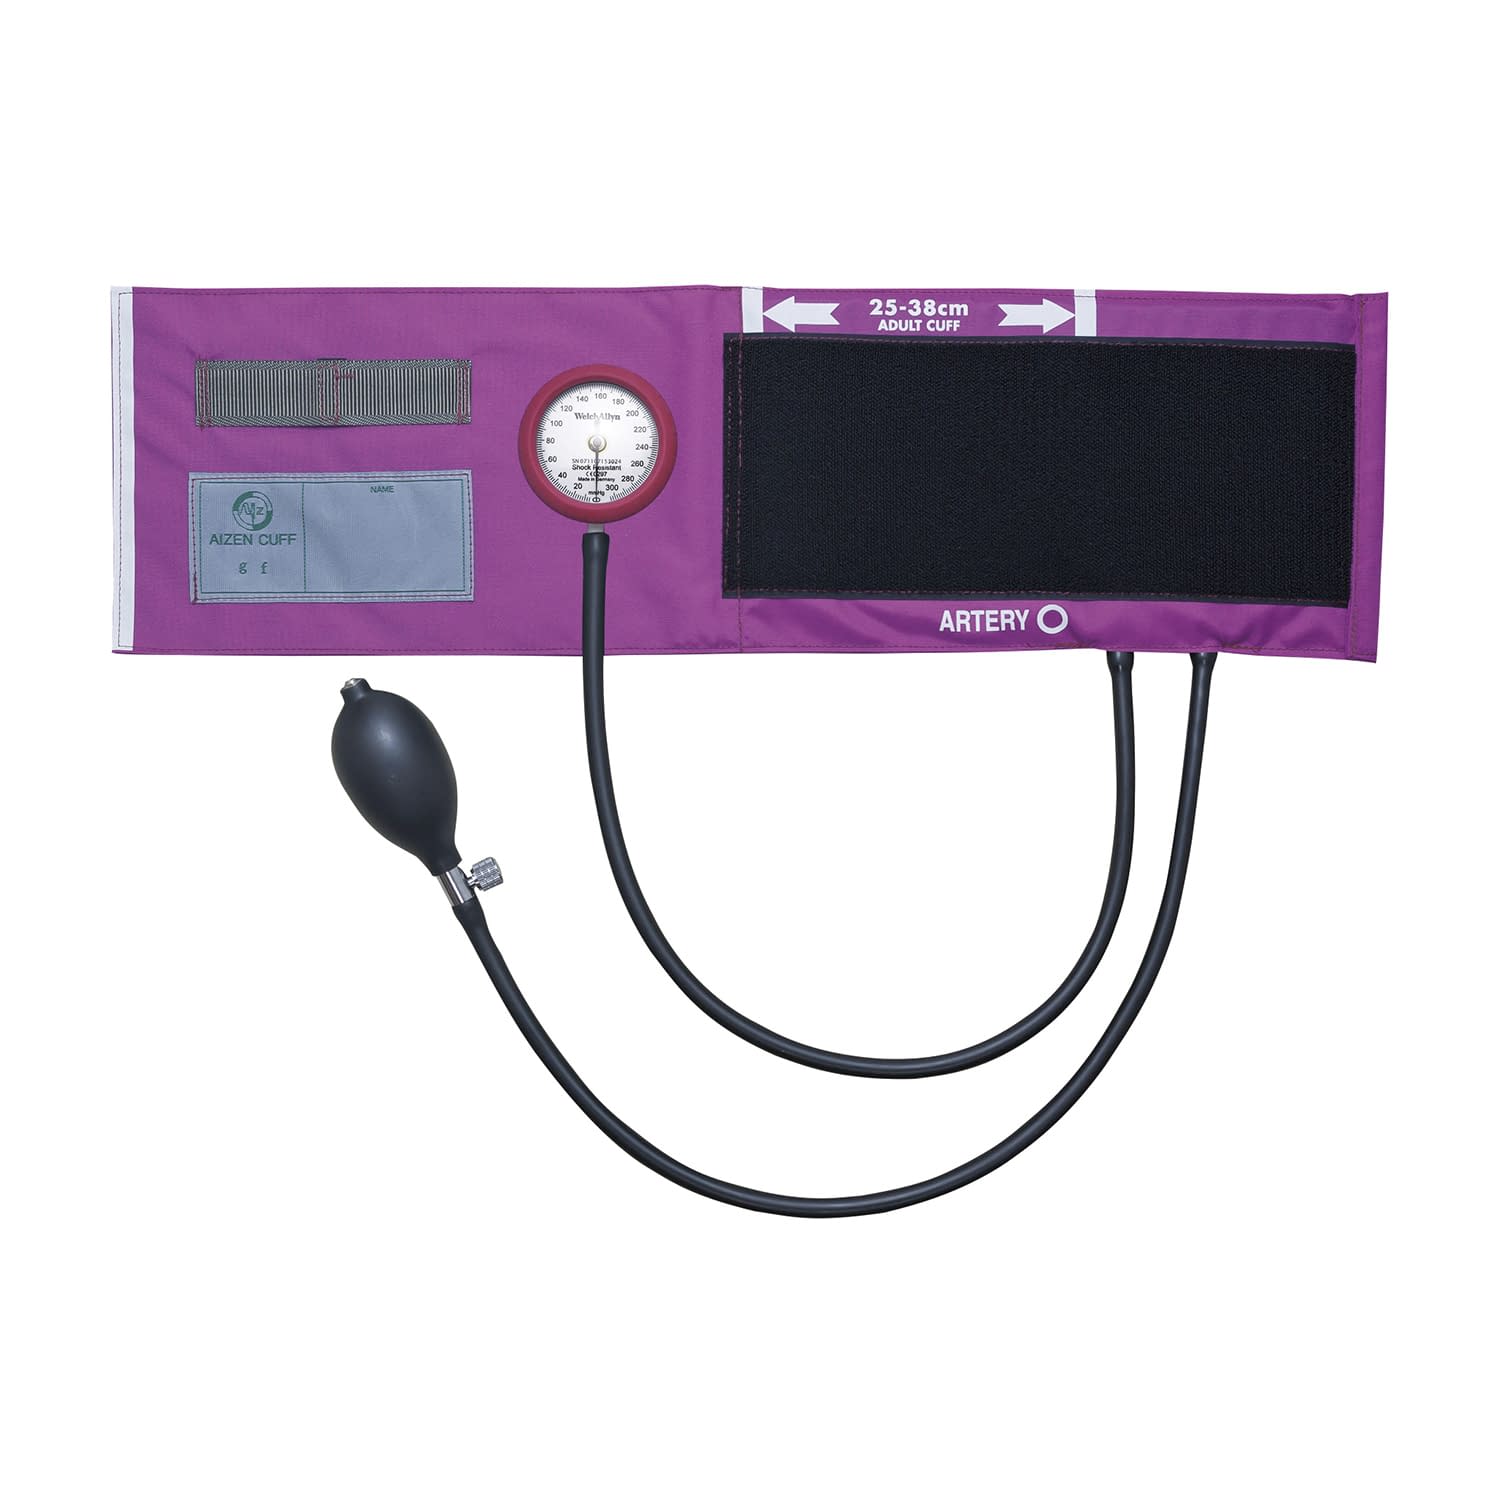 (24-2707-01)ギヤフリー血圧計プロフェッショナル GF700-52(ﾏｾﾞﾝﾀ) ｷﾞﾔﾌﾘｰｹﾂｱﾂｹｲﾌﾟﾛﾌｪｯｼ【1台単位】【2019年カタログ商品】